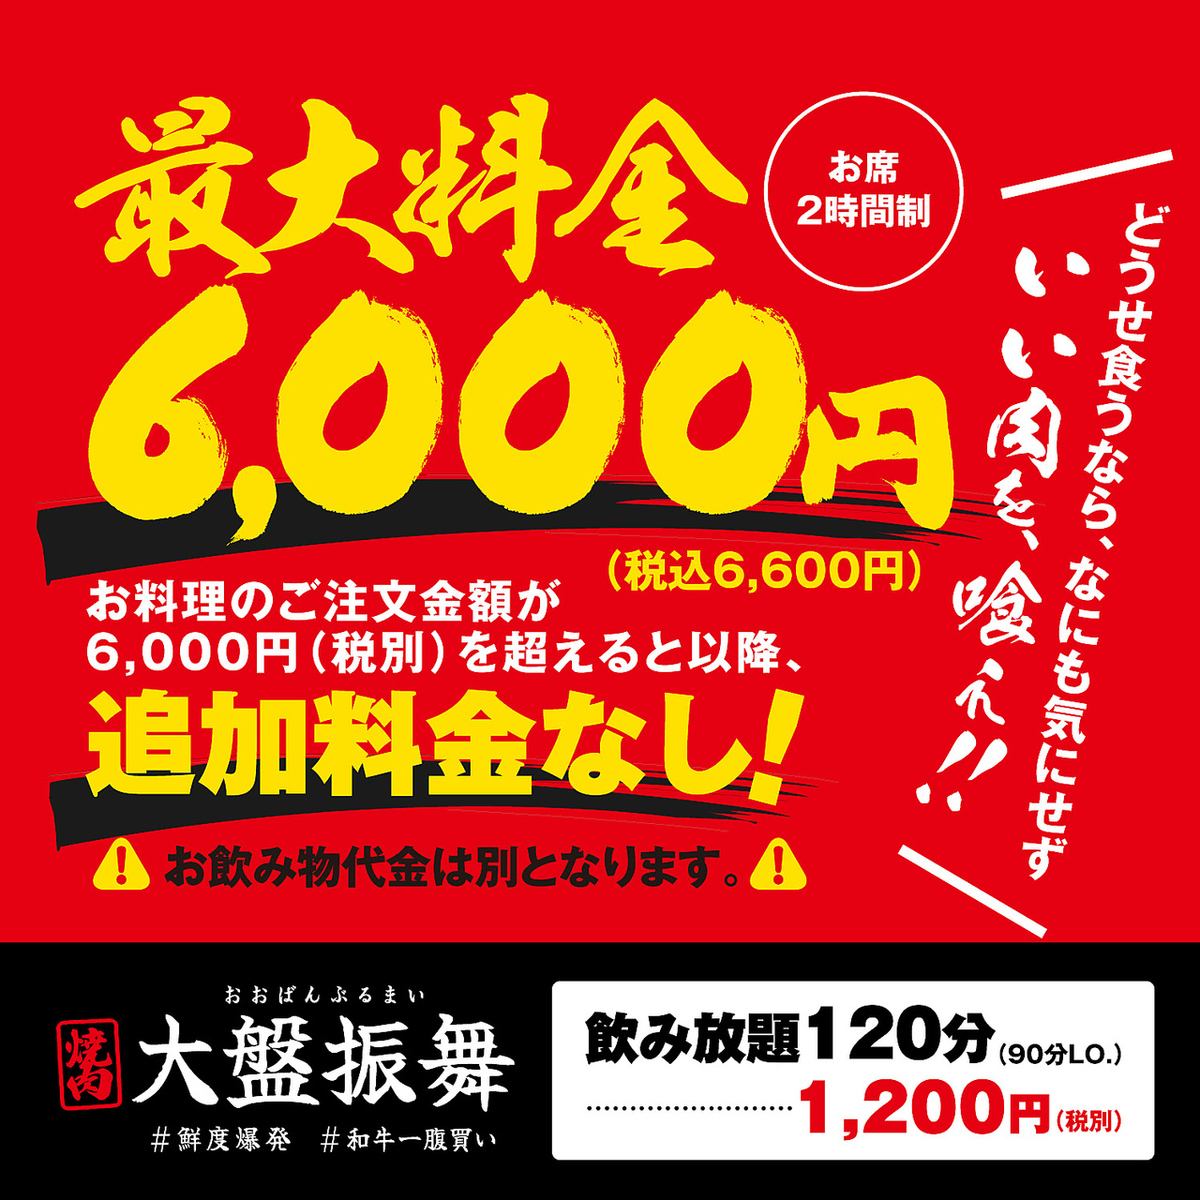 정액제 불고기! 식사요금 1인 6600엔(세금 포함)을 초과한 대금은 받지 않습니다! 음료 대금은 별도